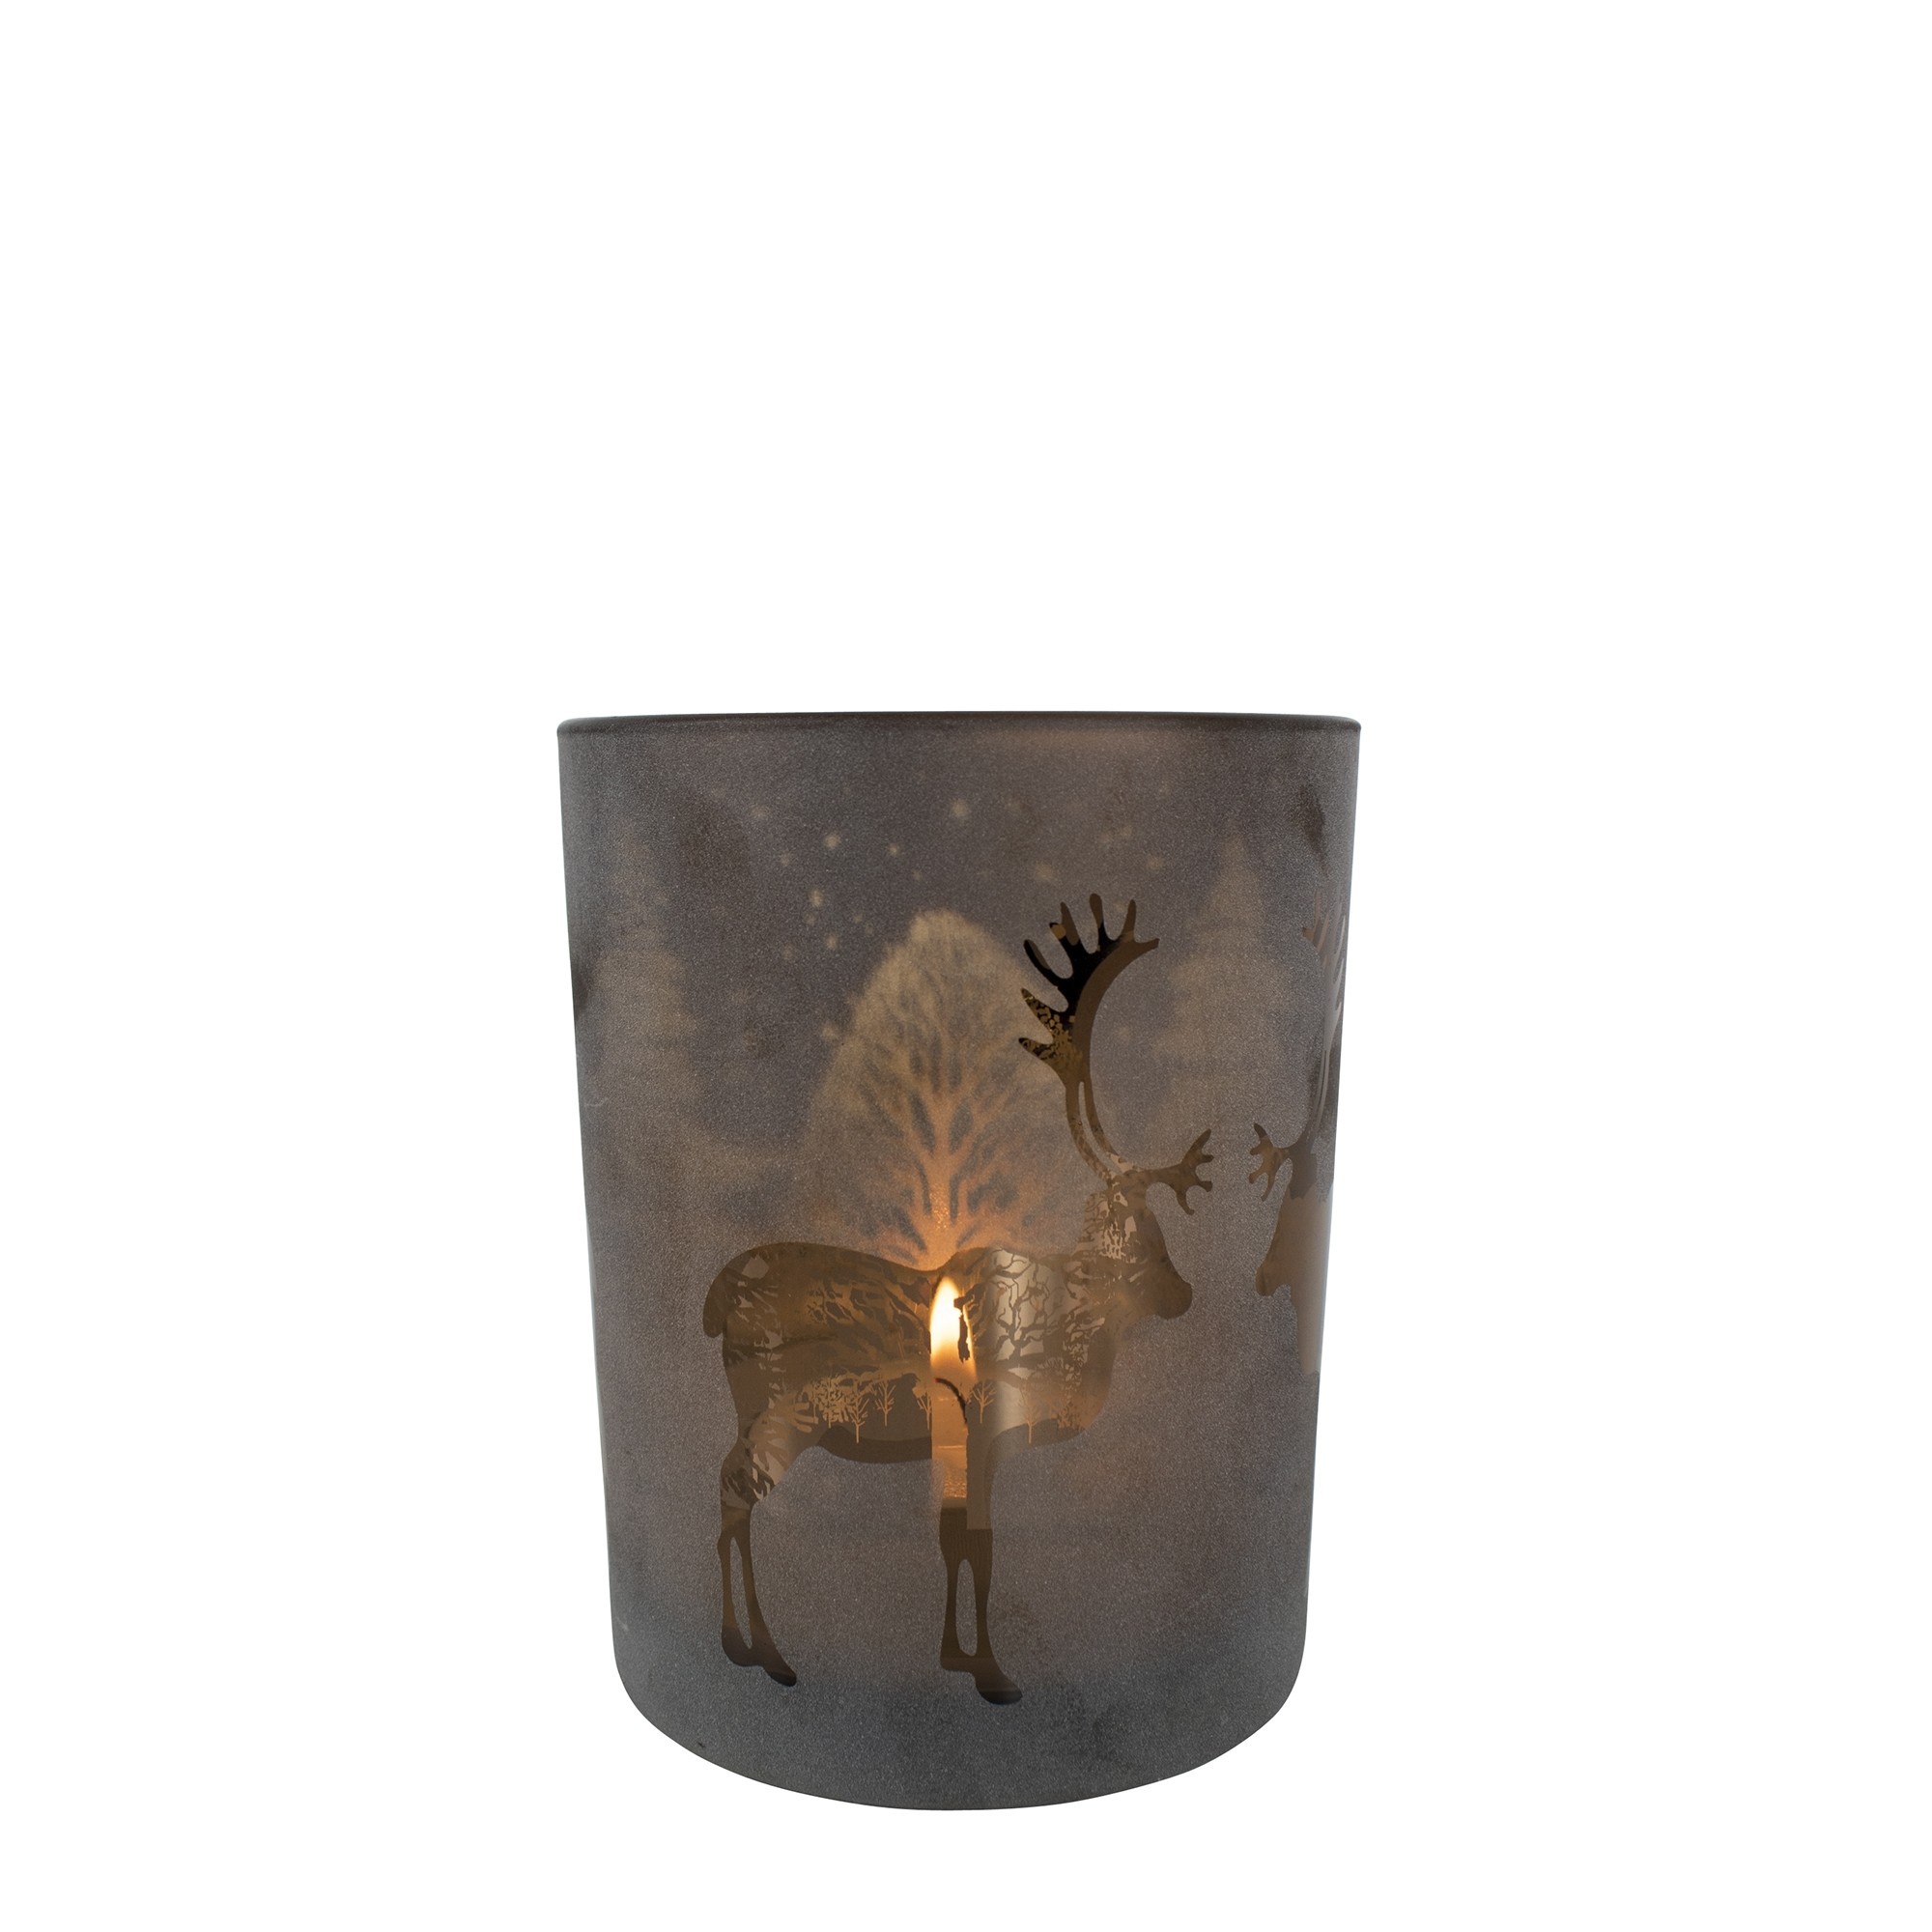 Bronzový skleněný svícen s jelenem - Ø 7 *8cm XMWLHBGZS